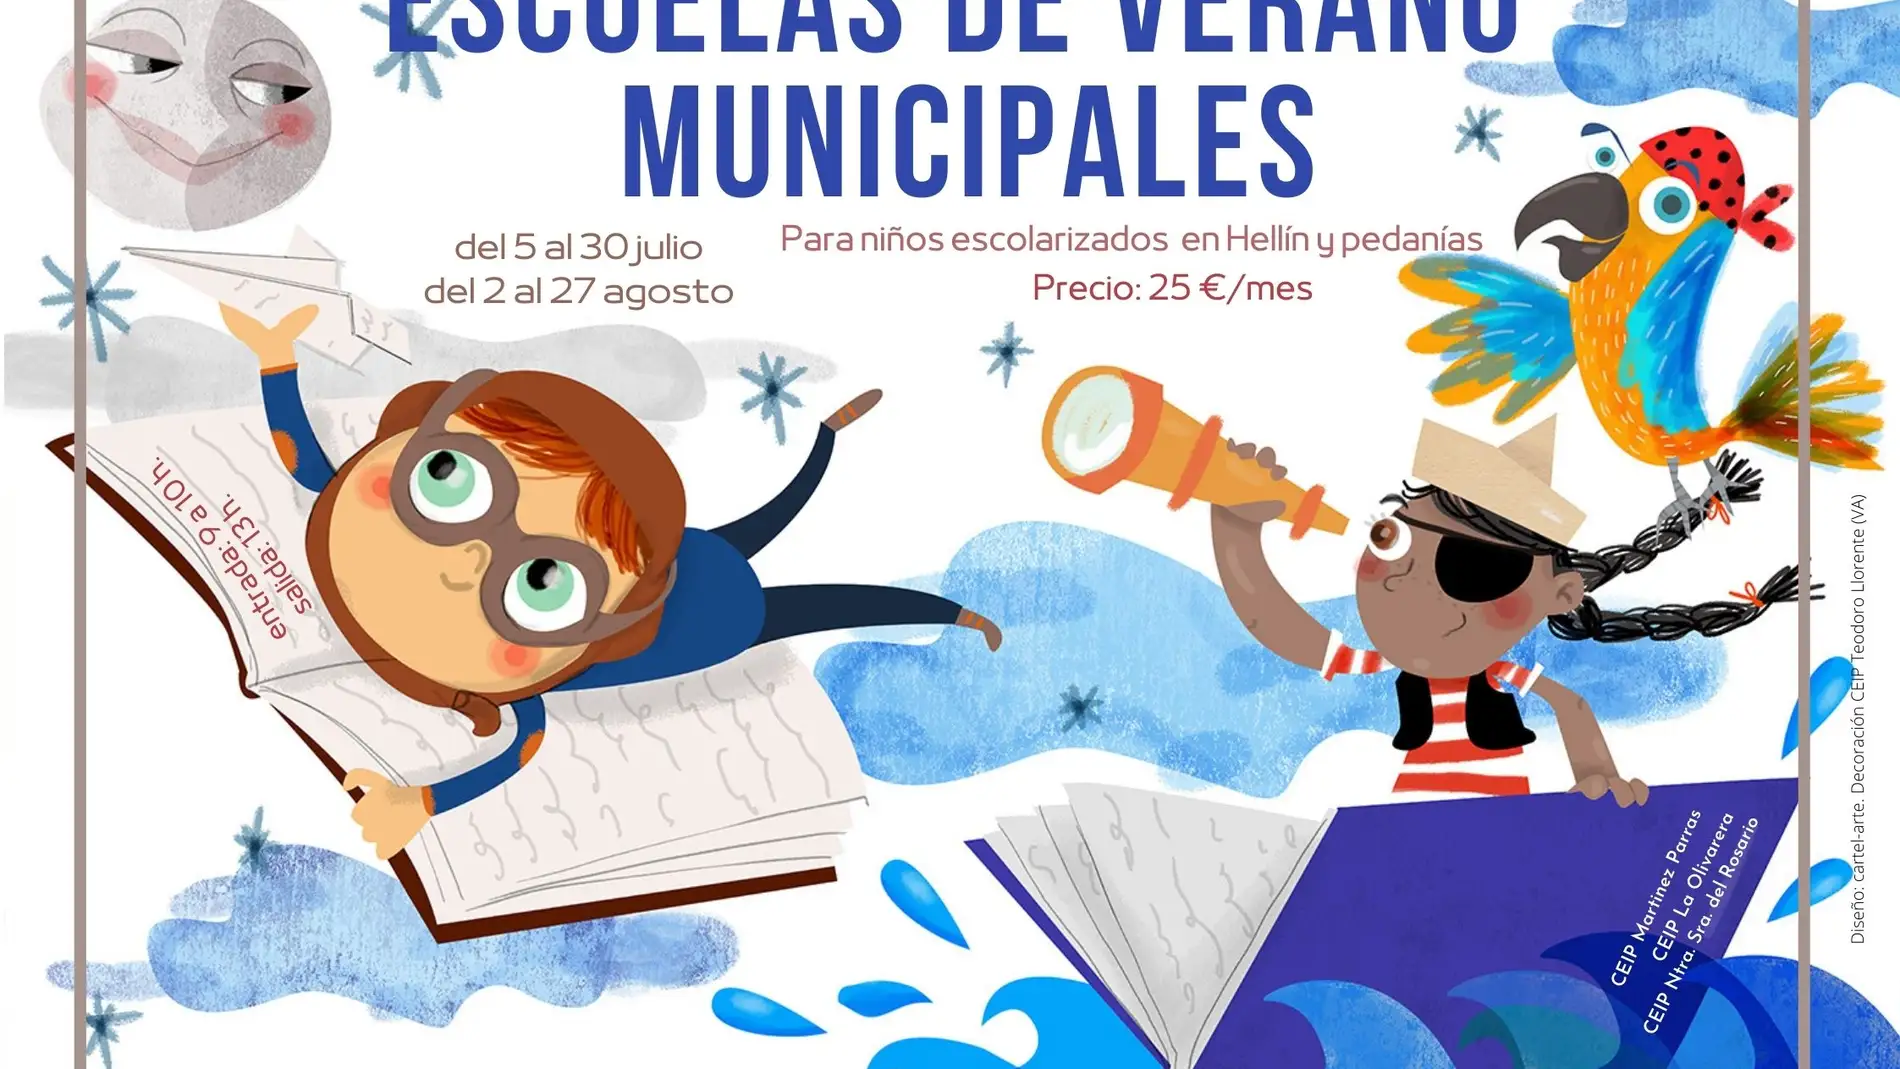 El Ayuntamiento de Hellín y Cáritas ofertarán escuelas de verano municipales en tres centros